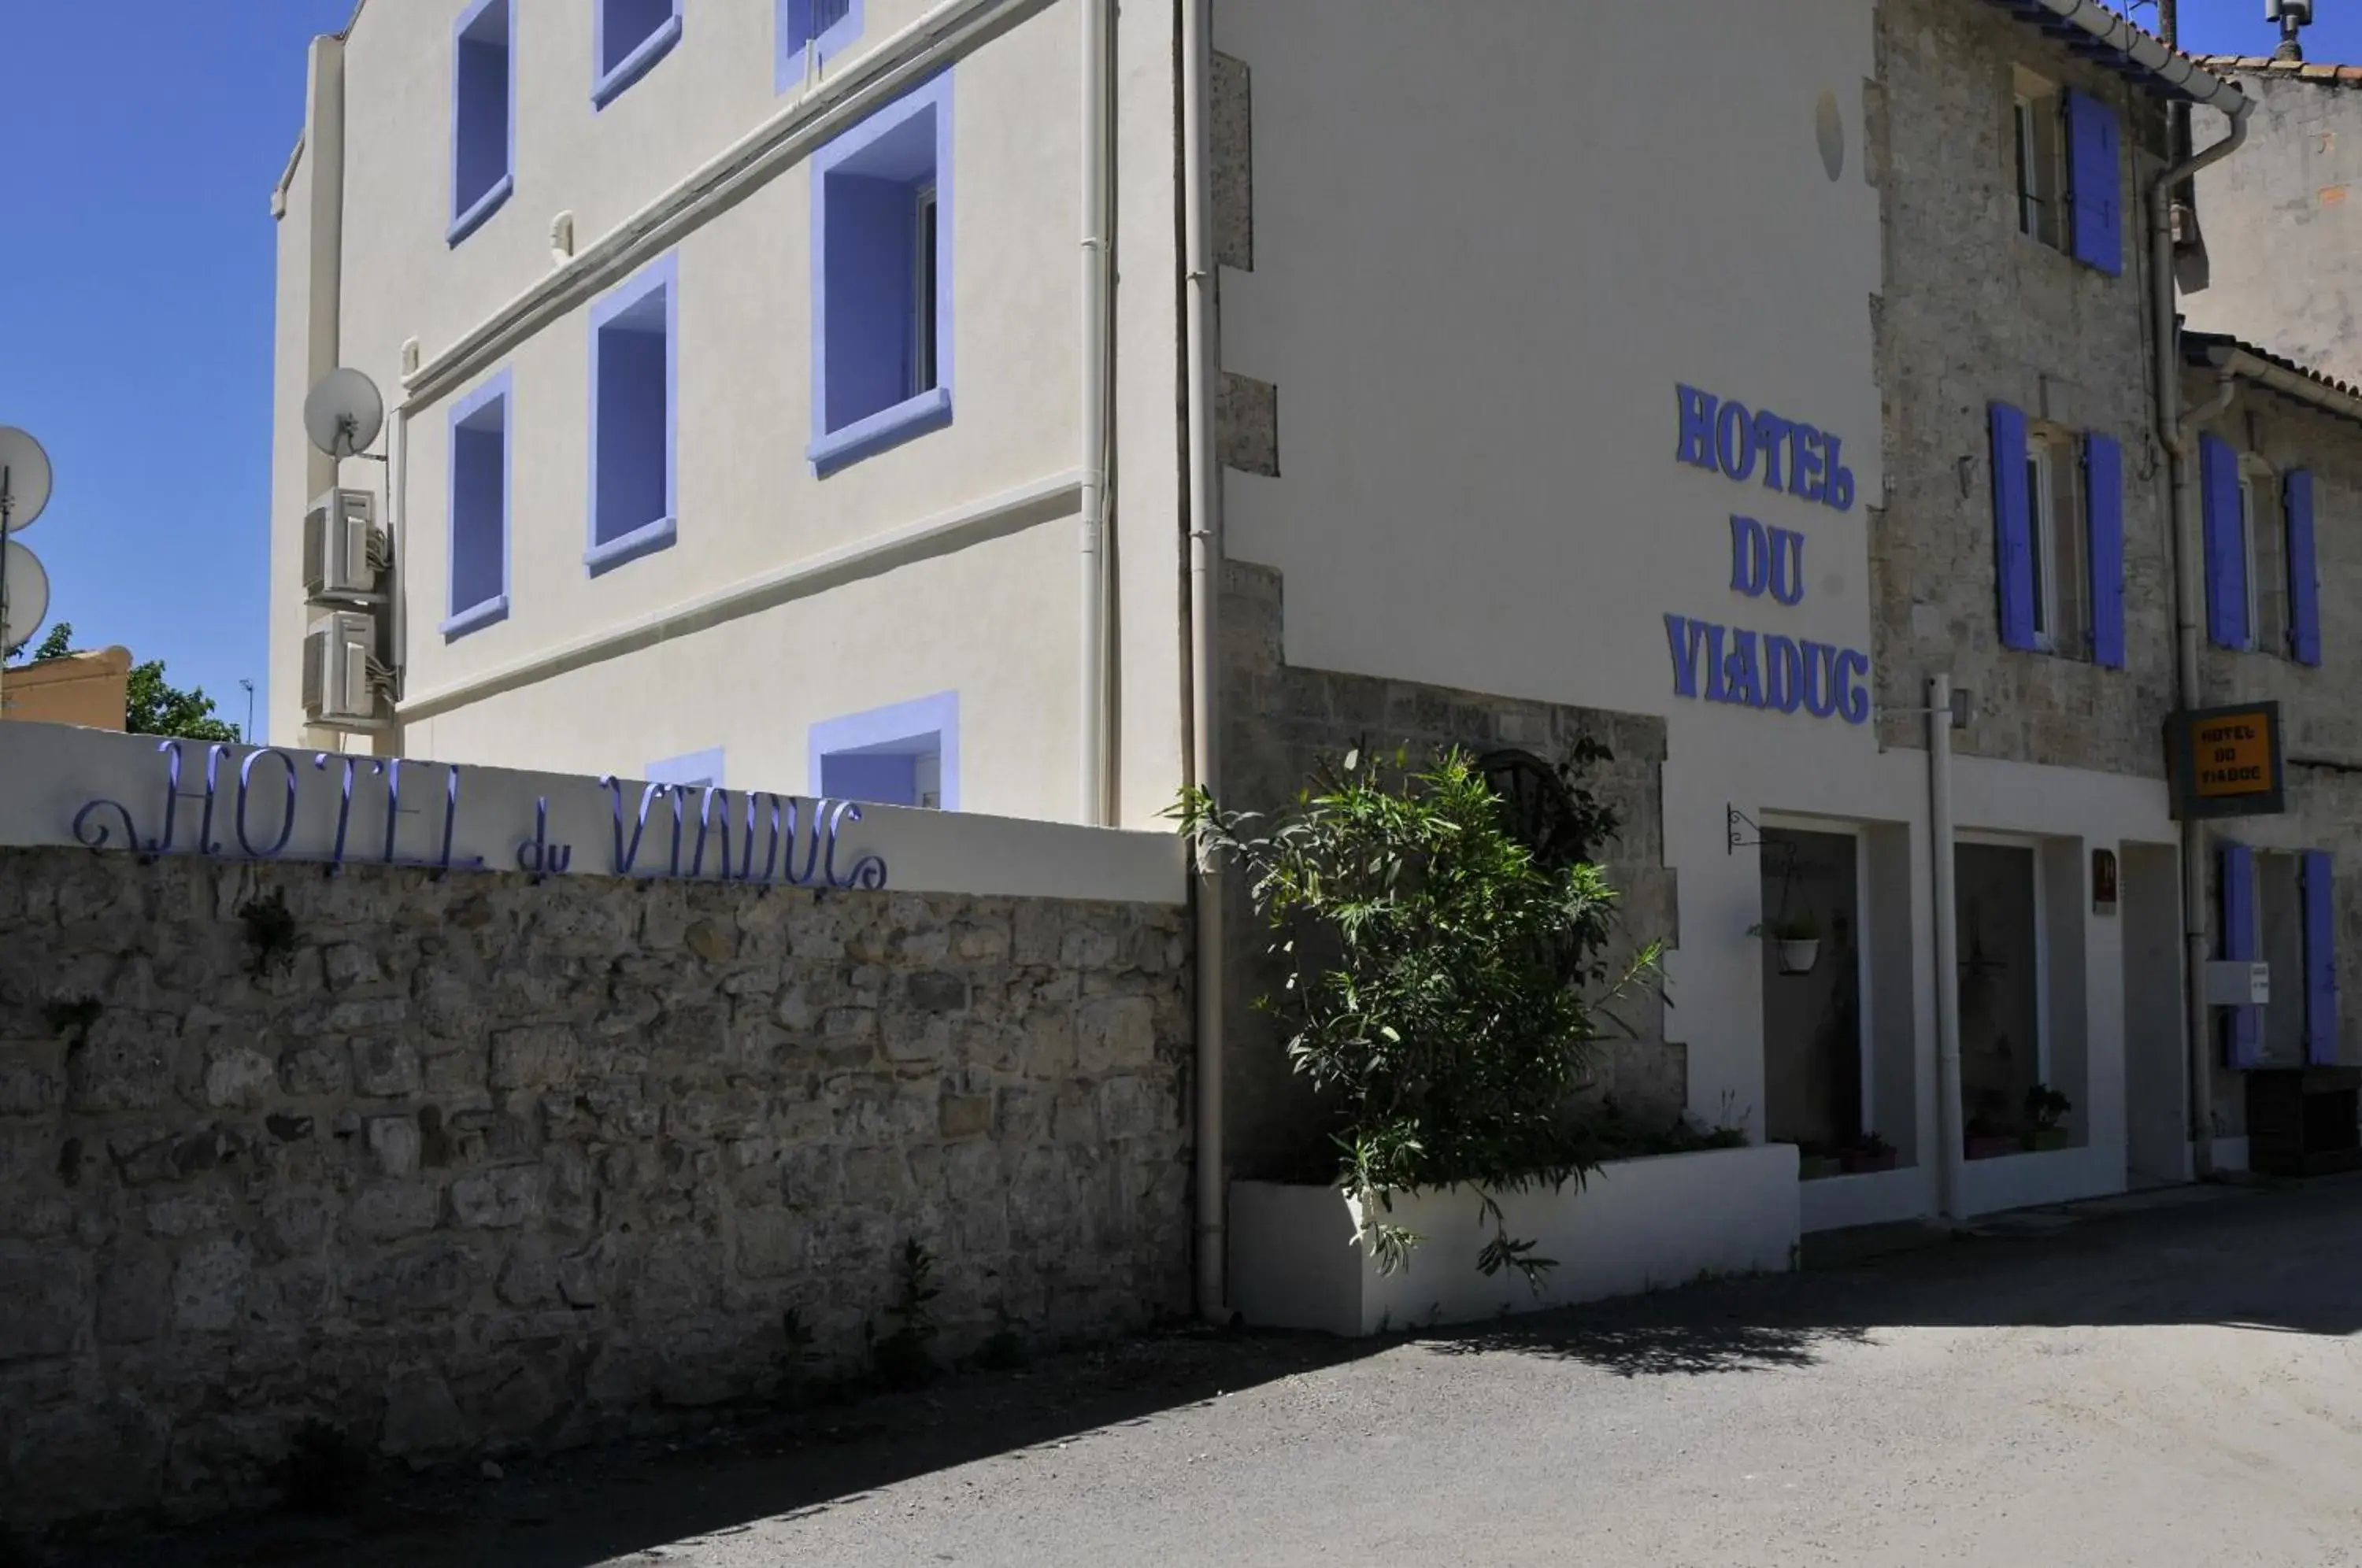 Facade/entrance, Property Building in Hôtel Du Viaduc